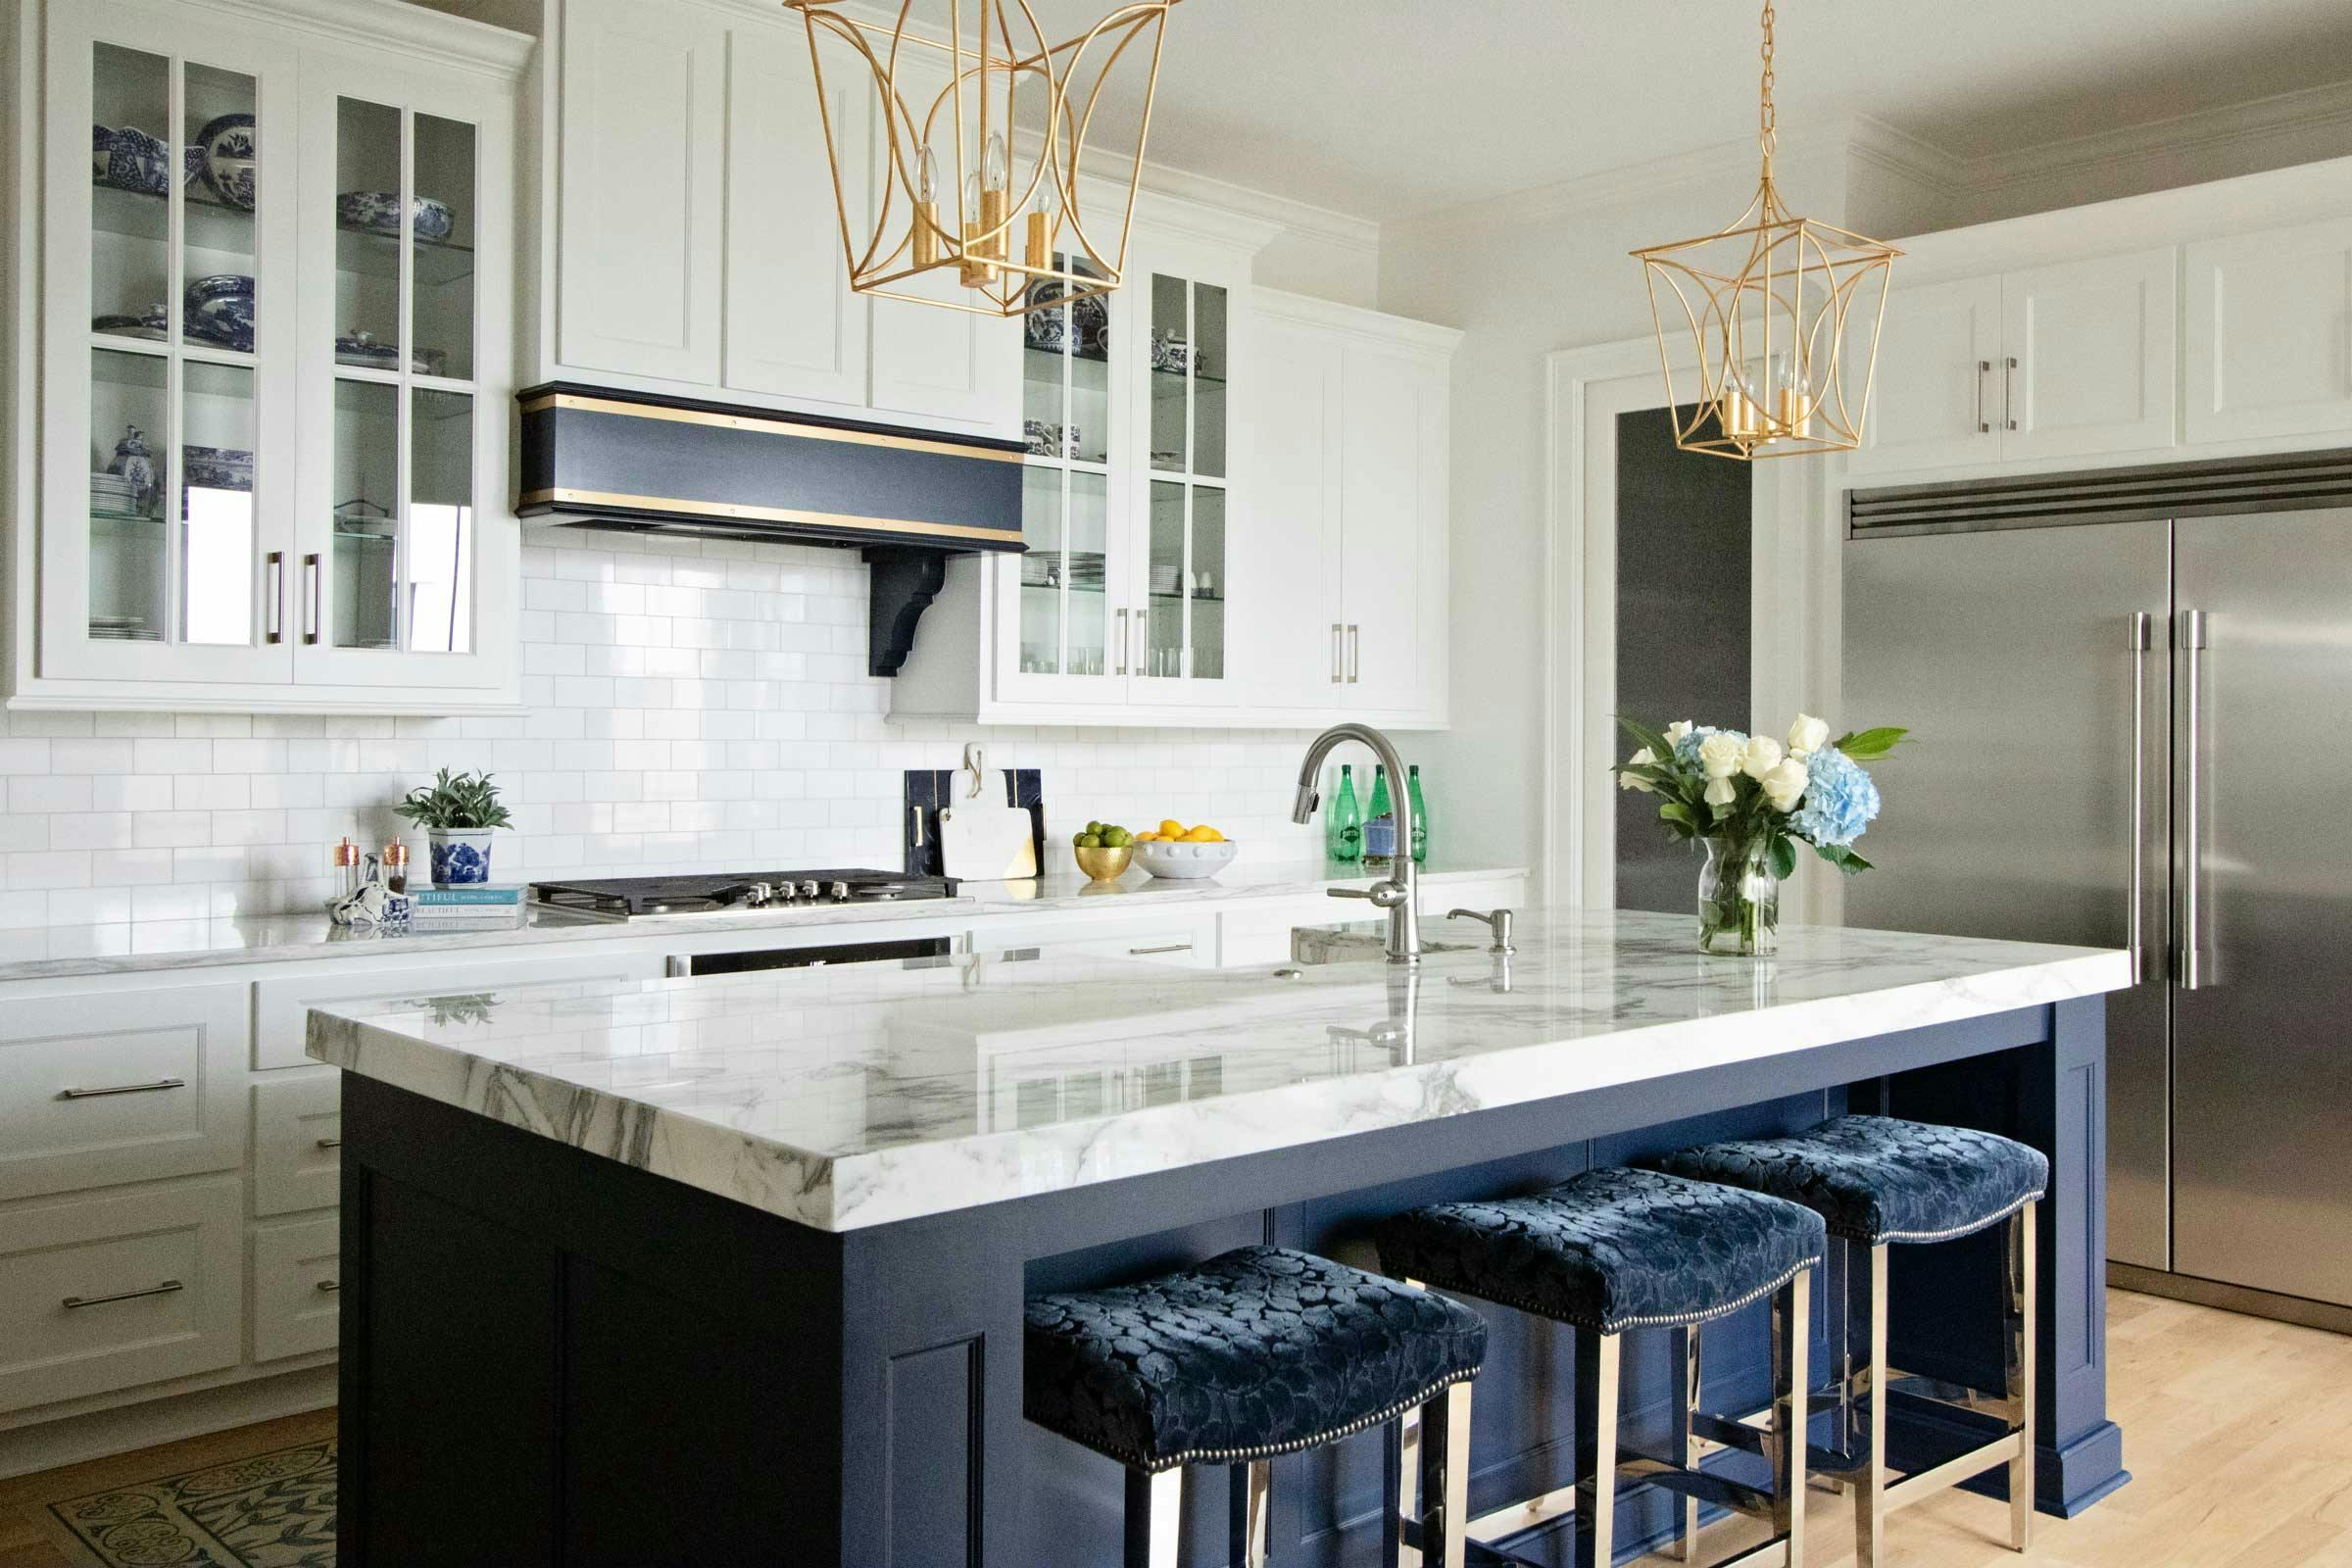 Beautiful modern kitchen interior design